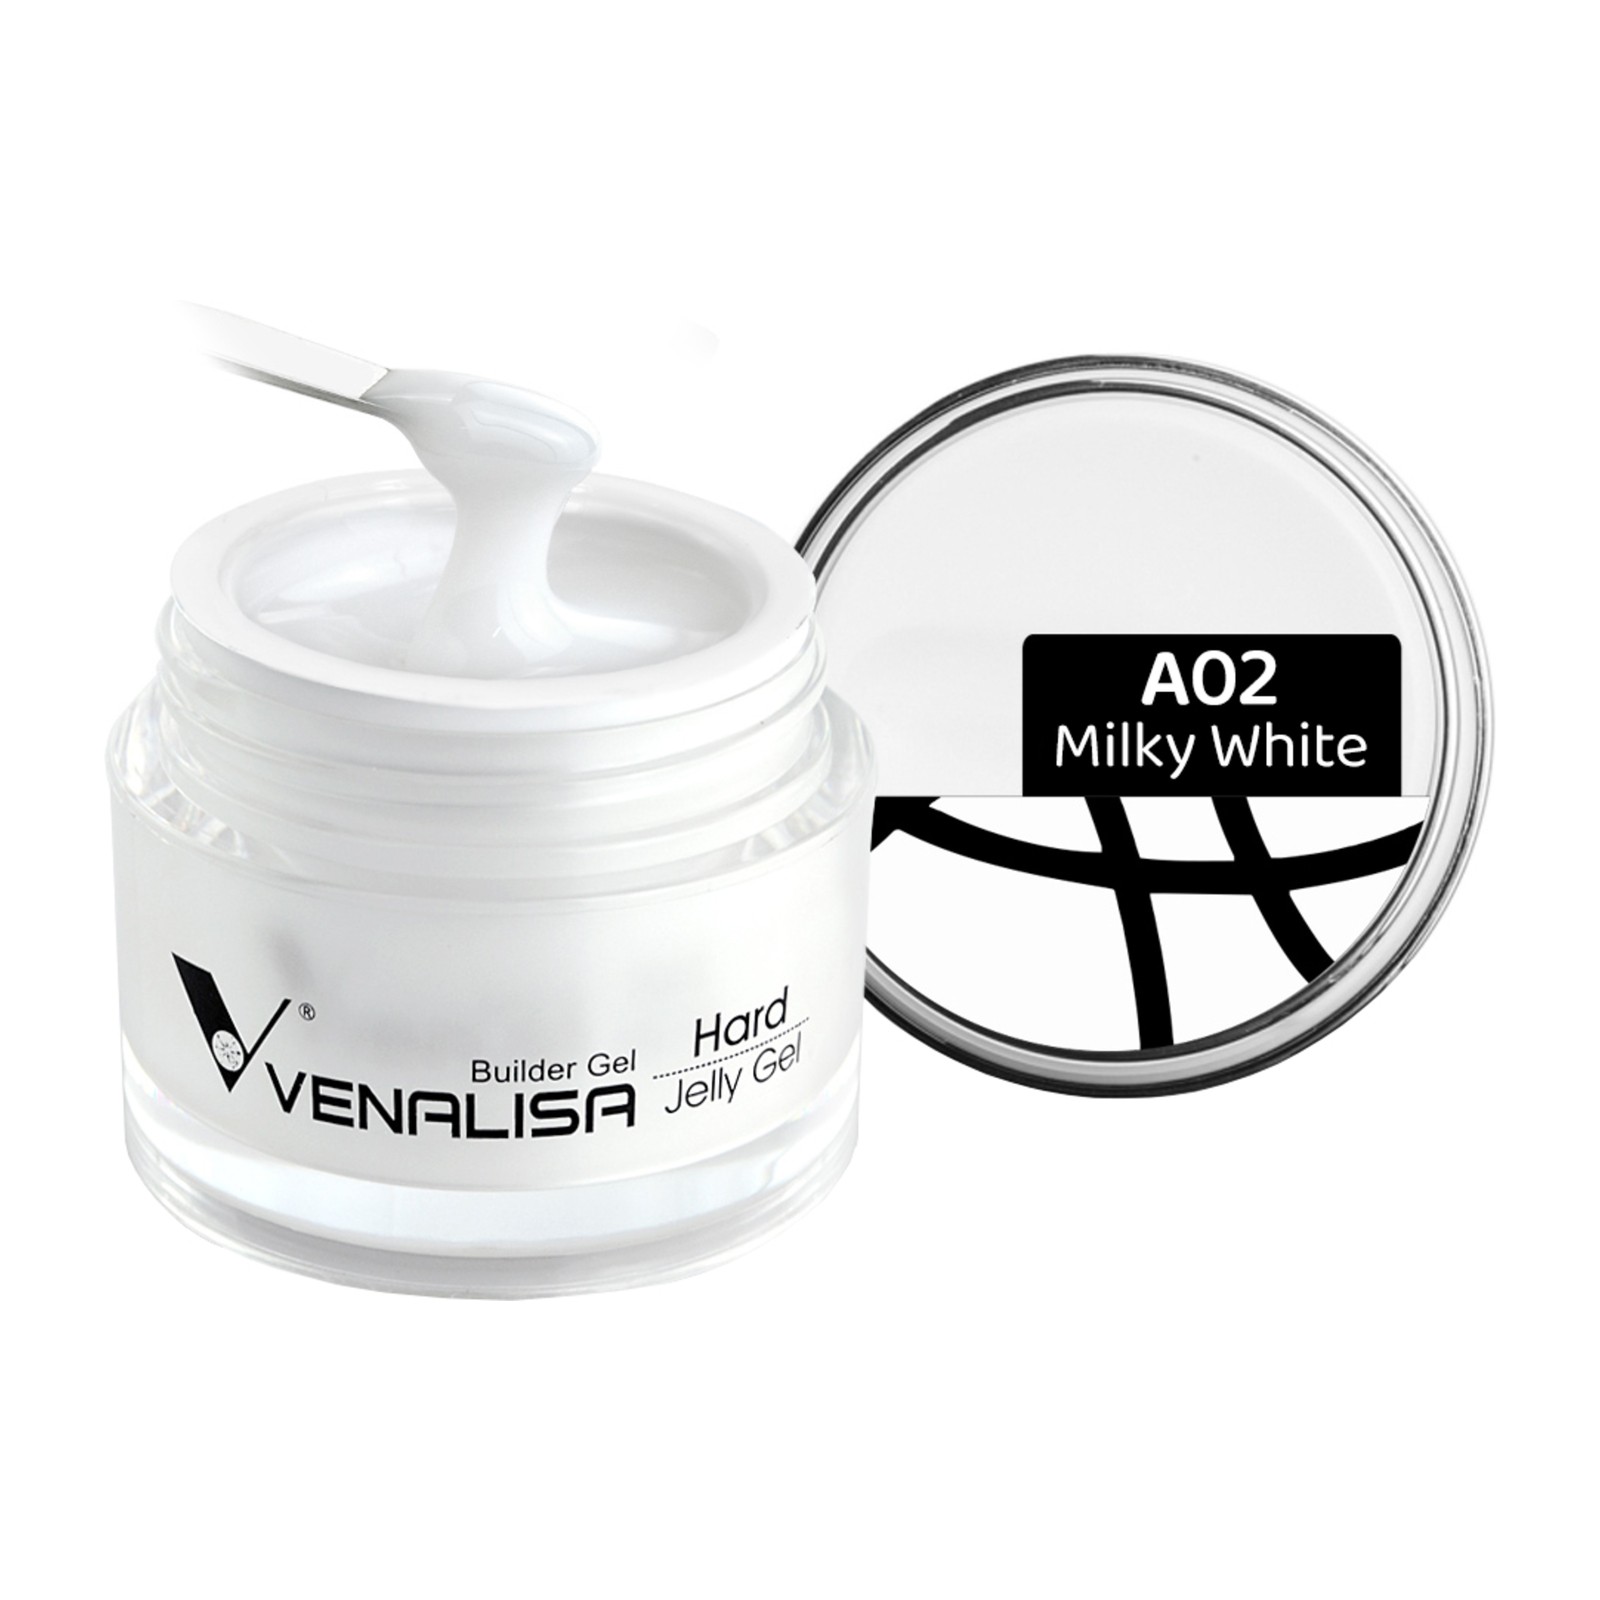 Venalisa -  A02 Pieno baltumo -  15 ml